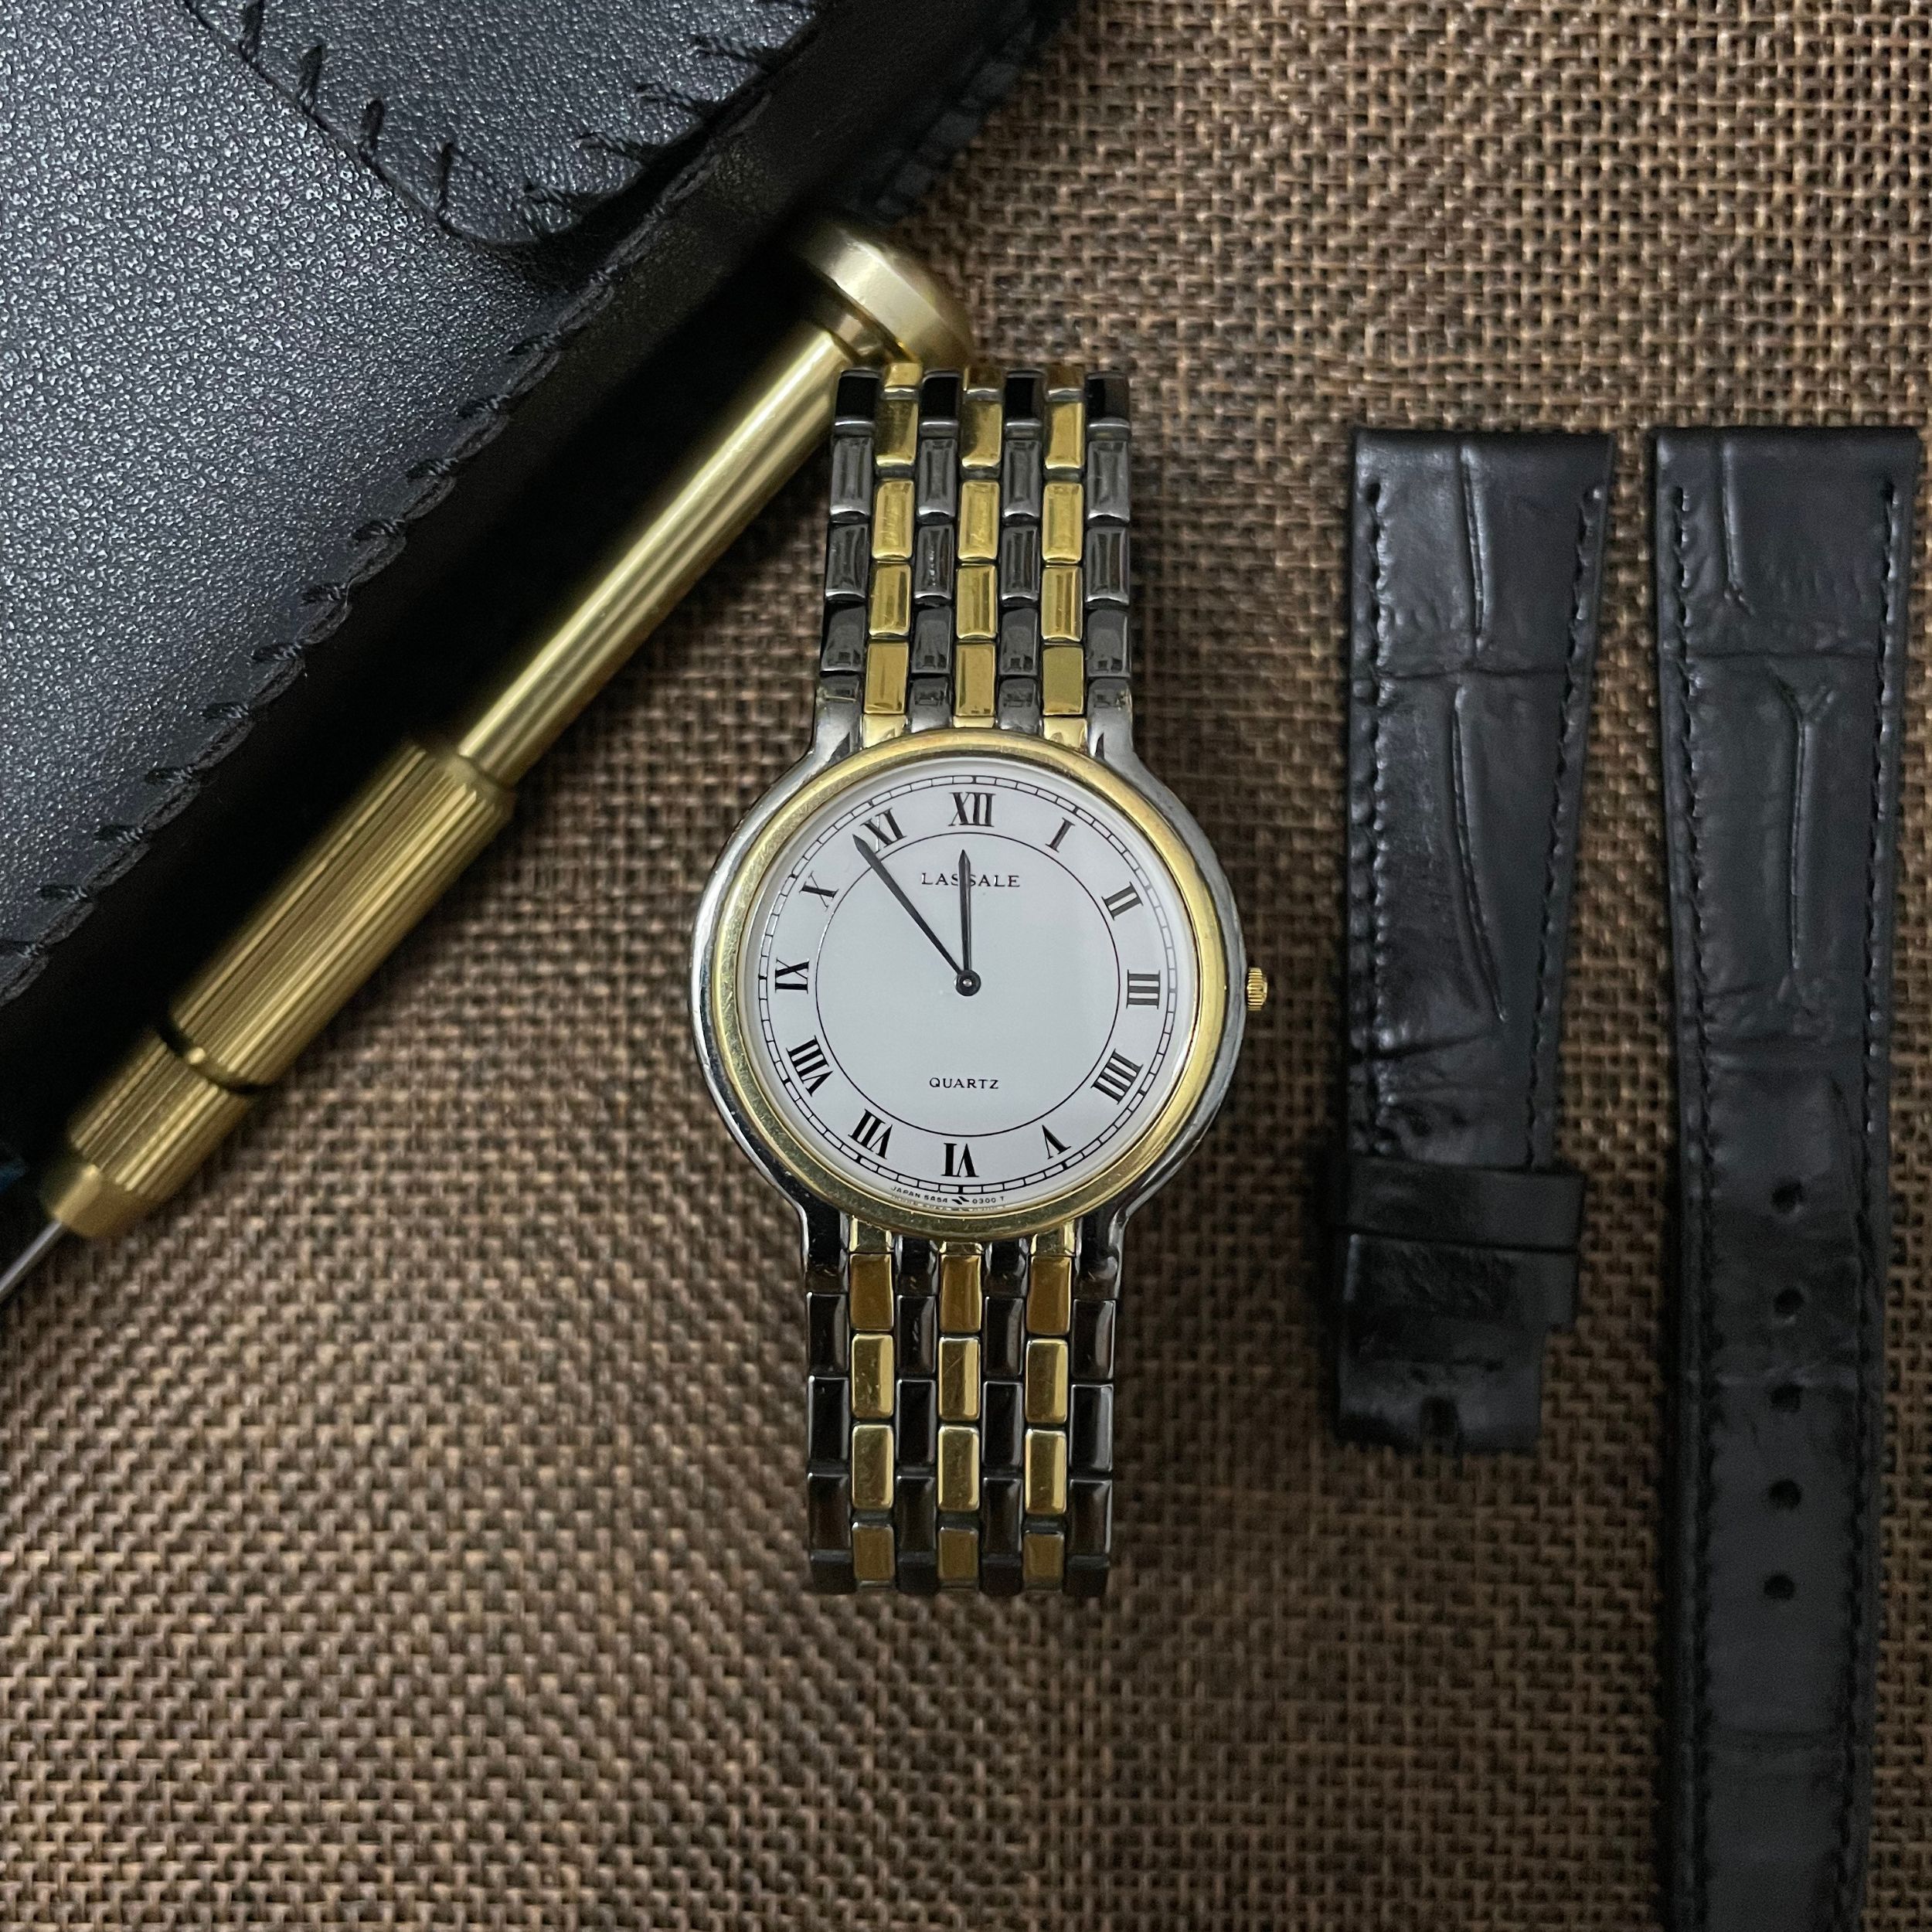 Đồng hồ Seiko Lassale Quartz 5A54-0069 chính hãng (2hand) - Đồng hồ Vintage  - Shop đồng hồ cũ, địa chỉ chuyên cung cấp các loại đồng hồ cổ, đồng hồ  vintage, đồng